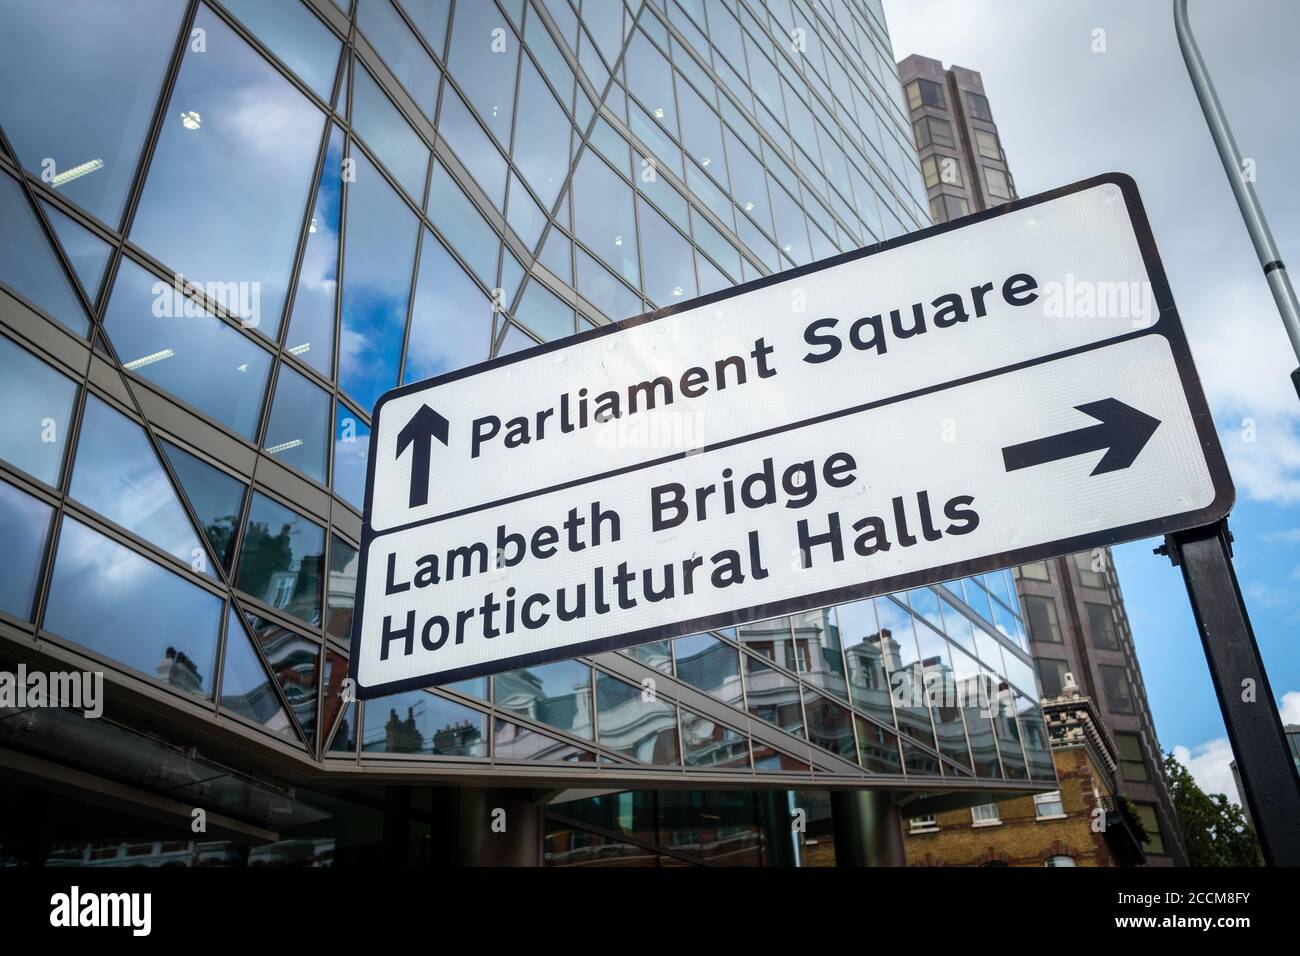 London - Beschilderung Richtung Parliament Square und Lambeth Bridge In Westminster Stockfoto